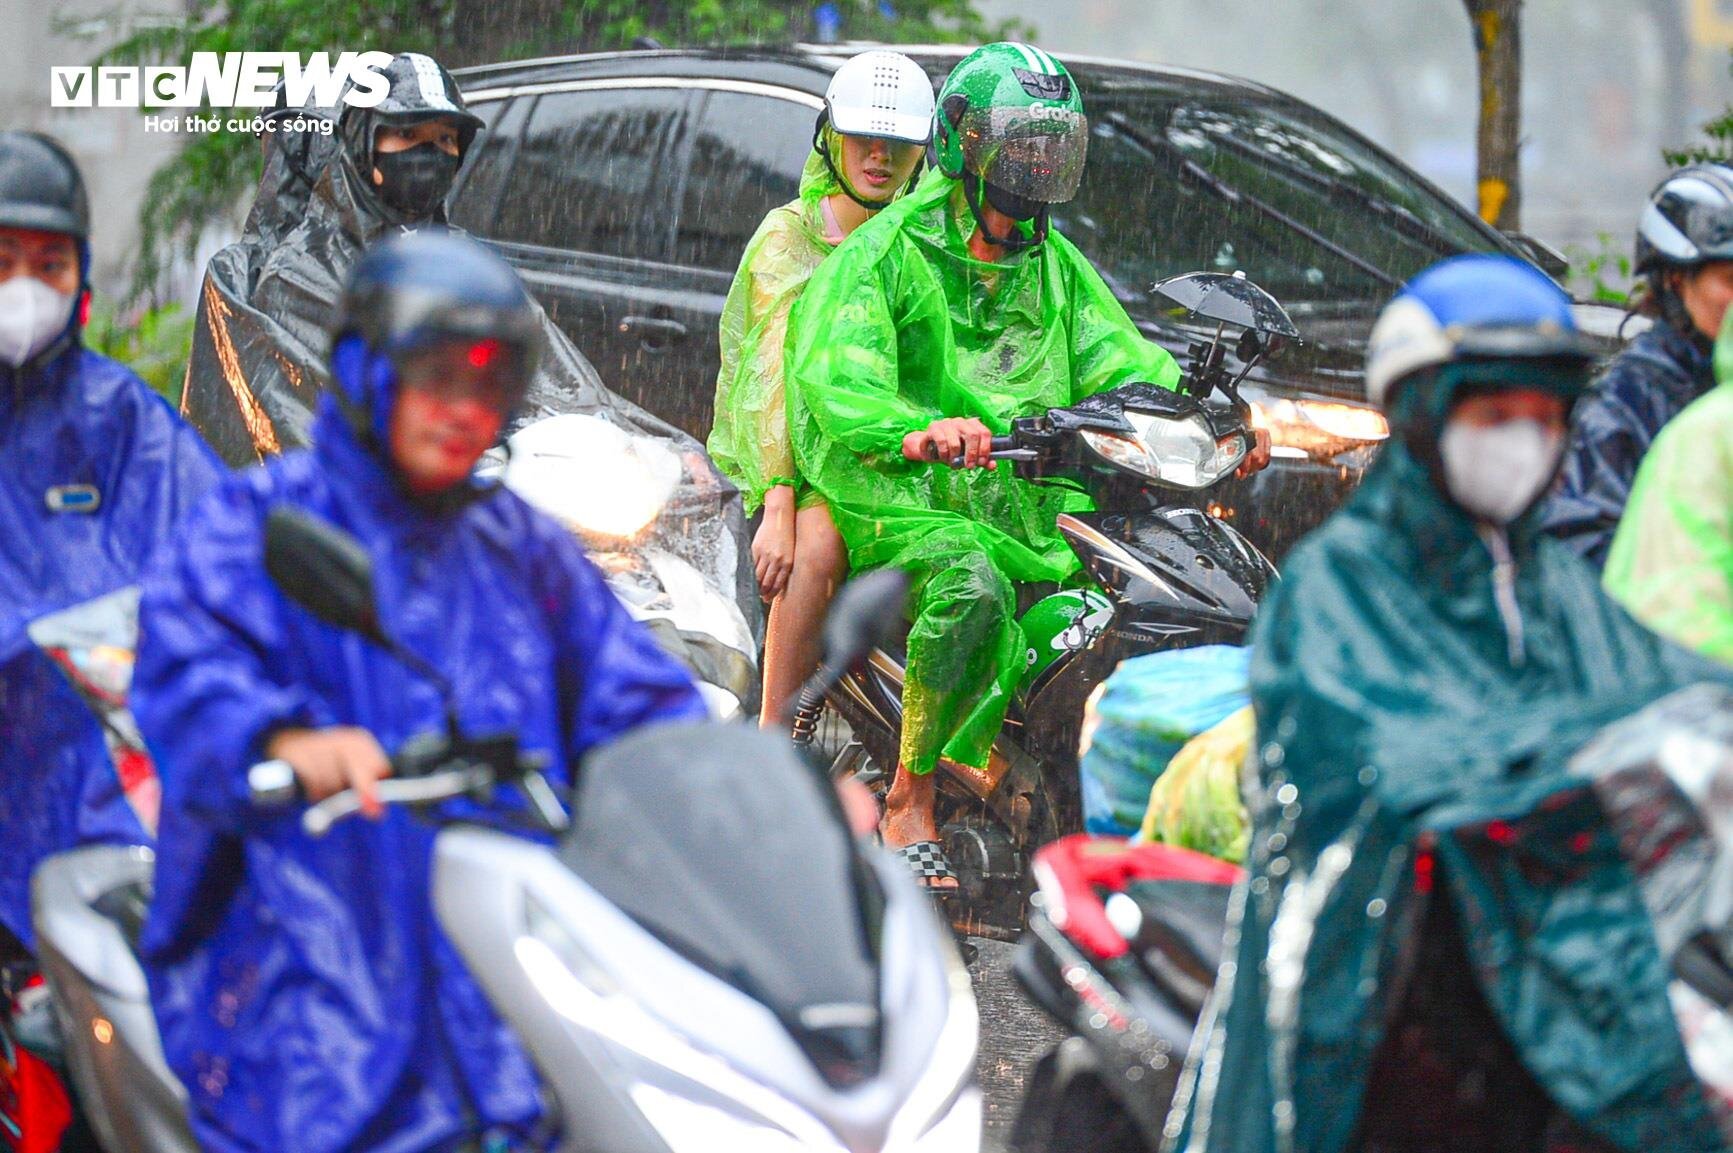 Giao thông Hà Nội hỗn loạn trong cơn mưa như trút nước- Ảnh 5.